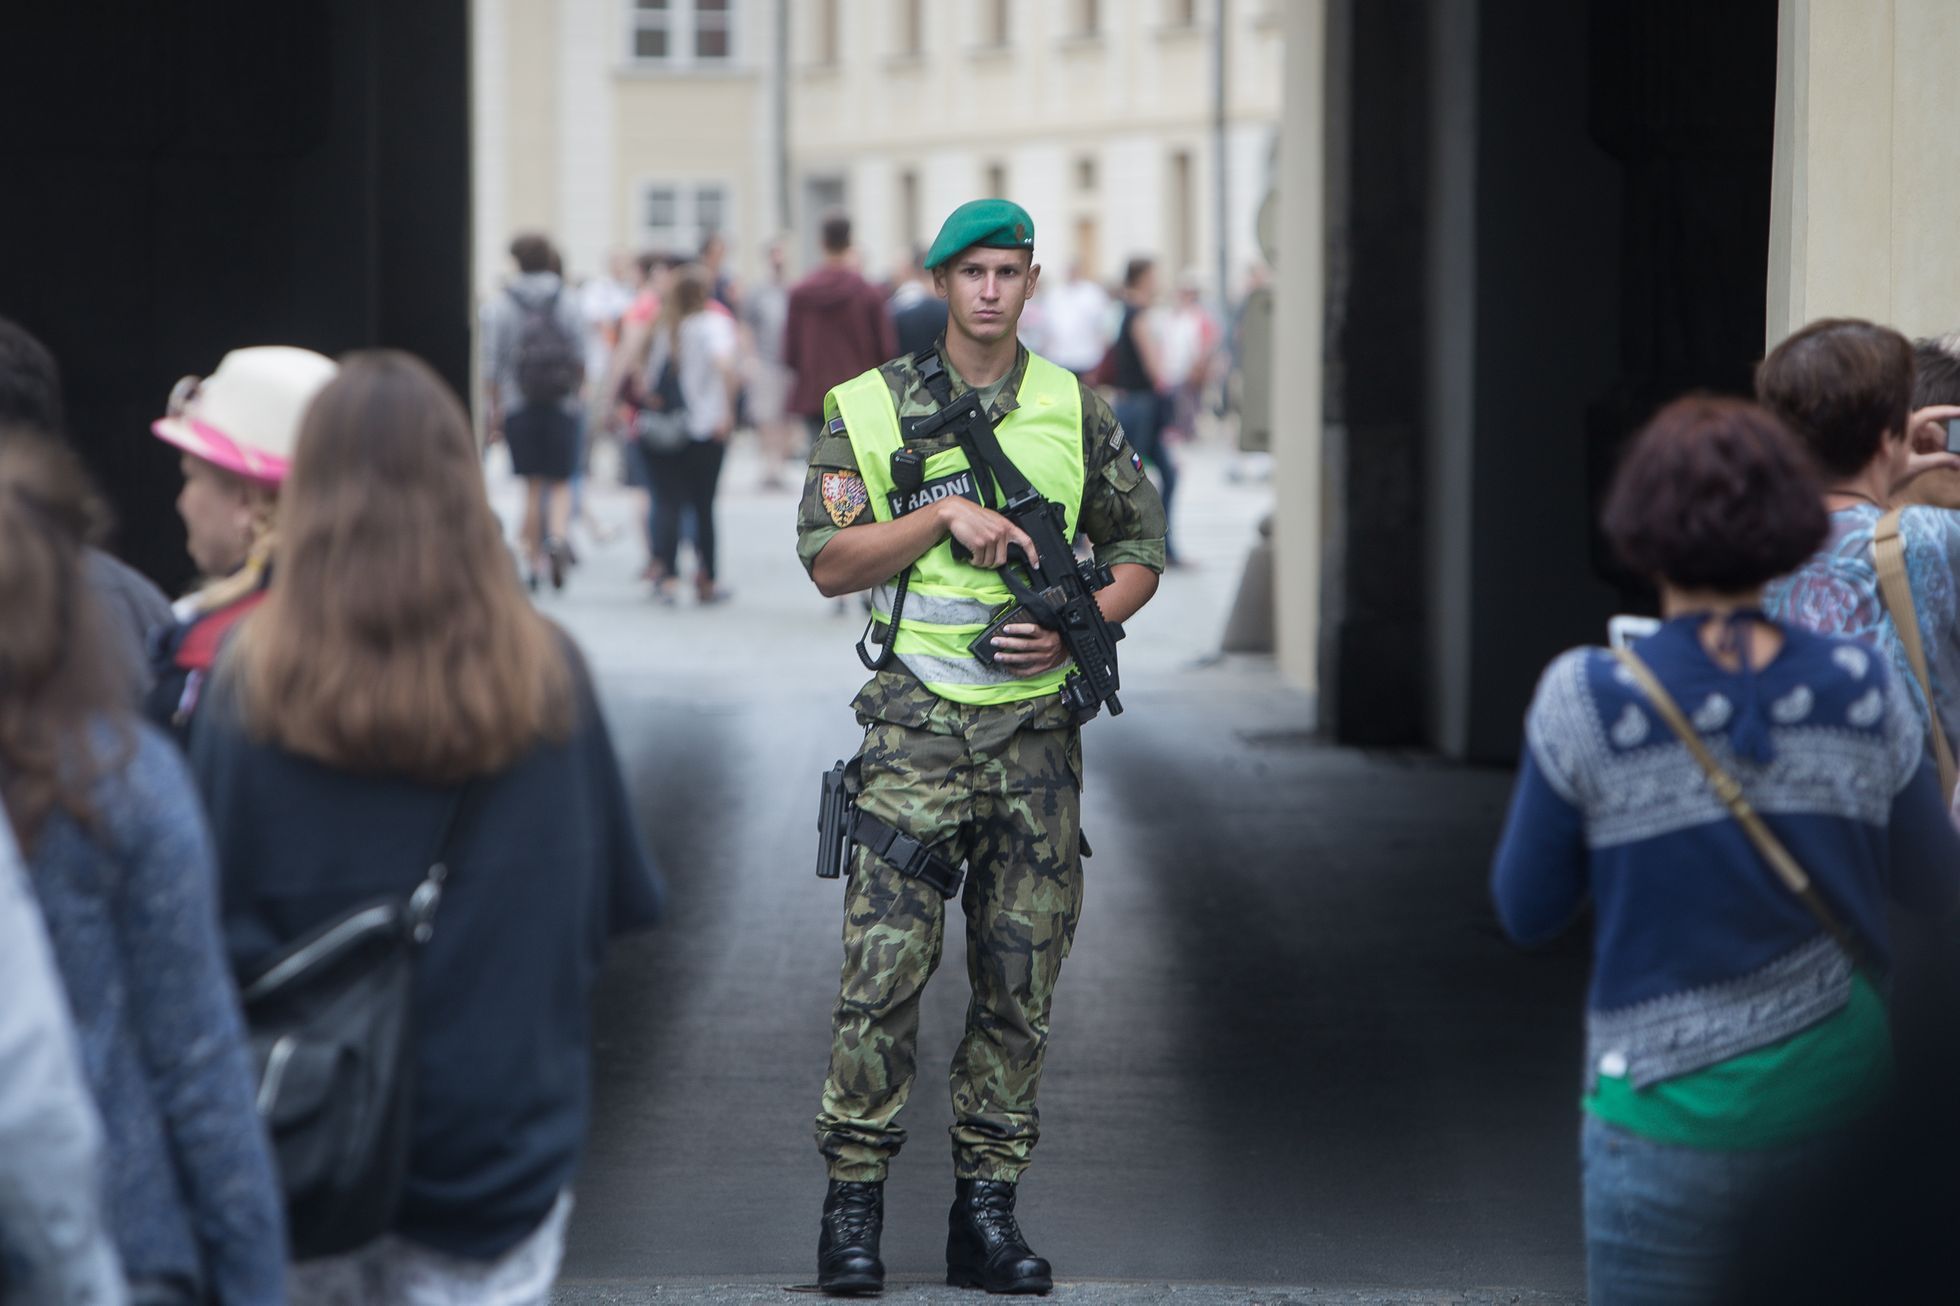 Fronty na Pražském hradě kvůli novým bezpečnostním opatřením